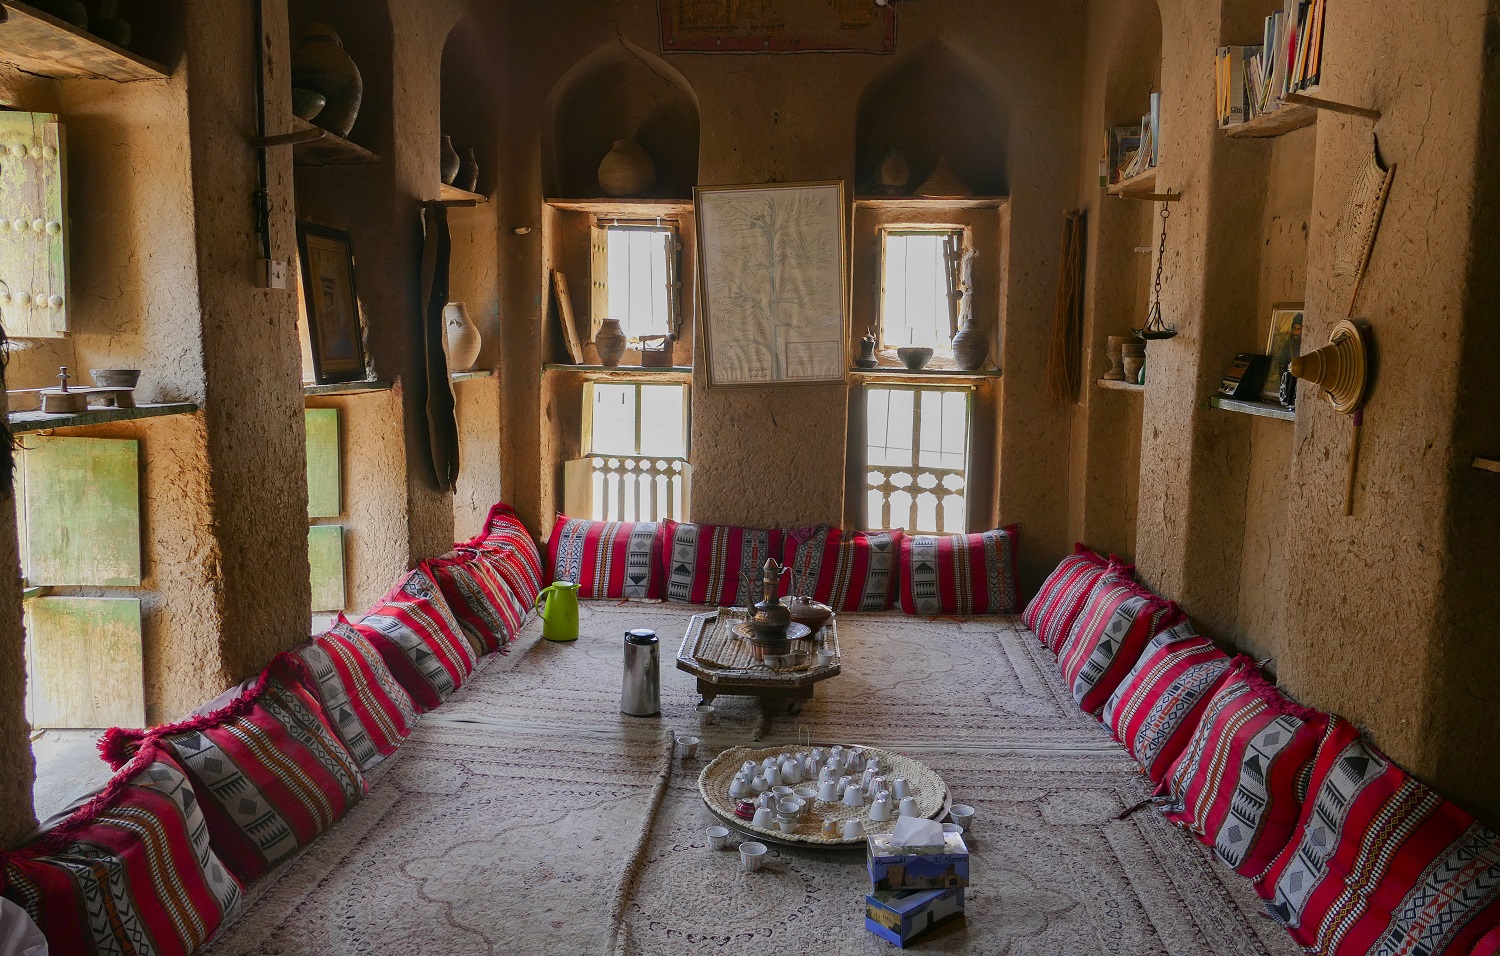 Village abandonné qui reprend vie peu à peu grâce à l'installation du musée folklorique - Oman, Trésor caché